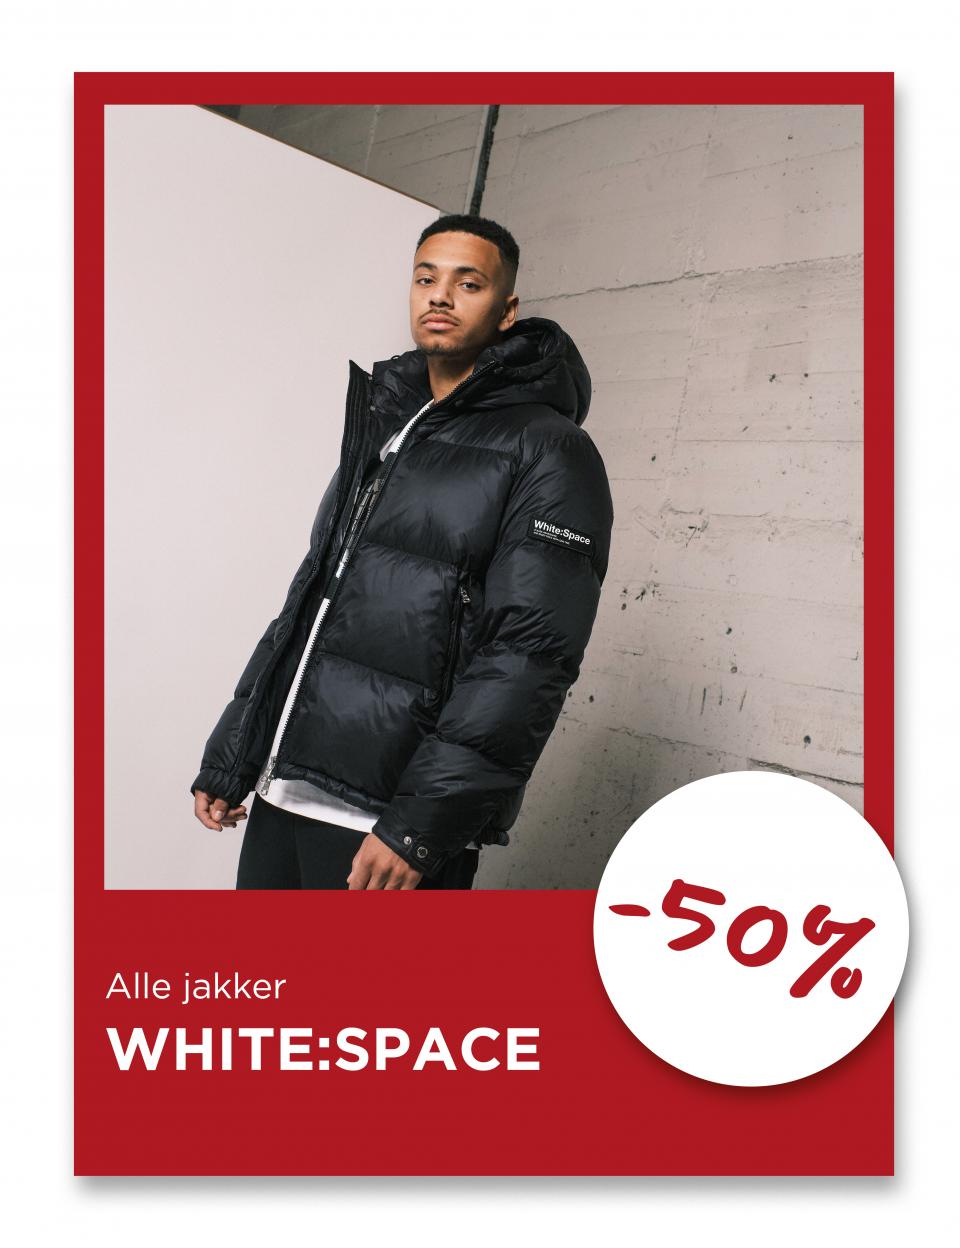 Alle jakker fra White:Space, -50%